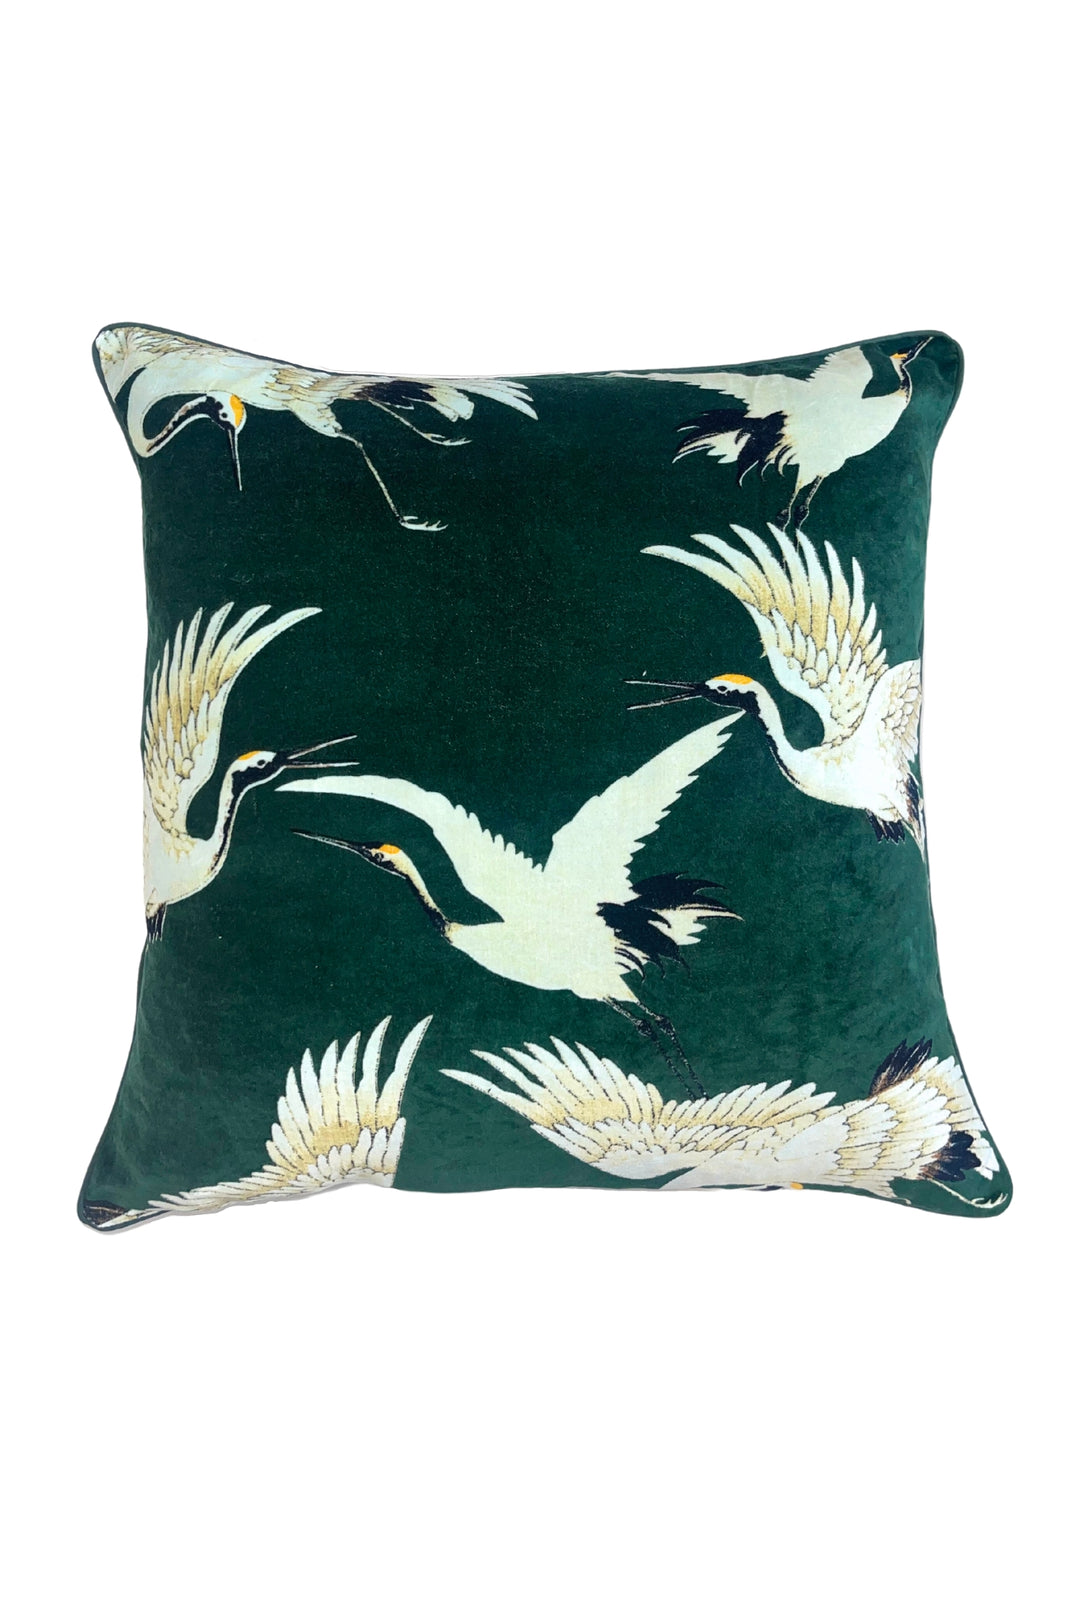 Forest green stork print velvet cushion by One Hundred Stars